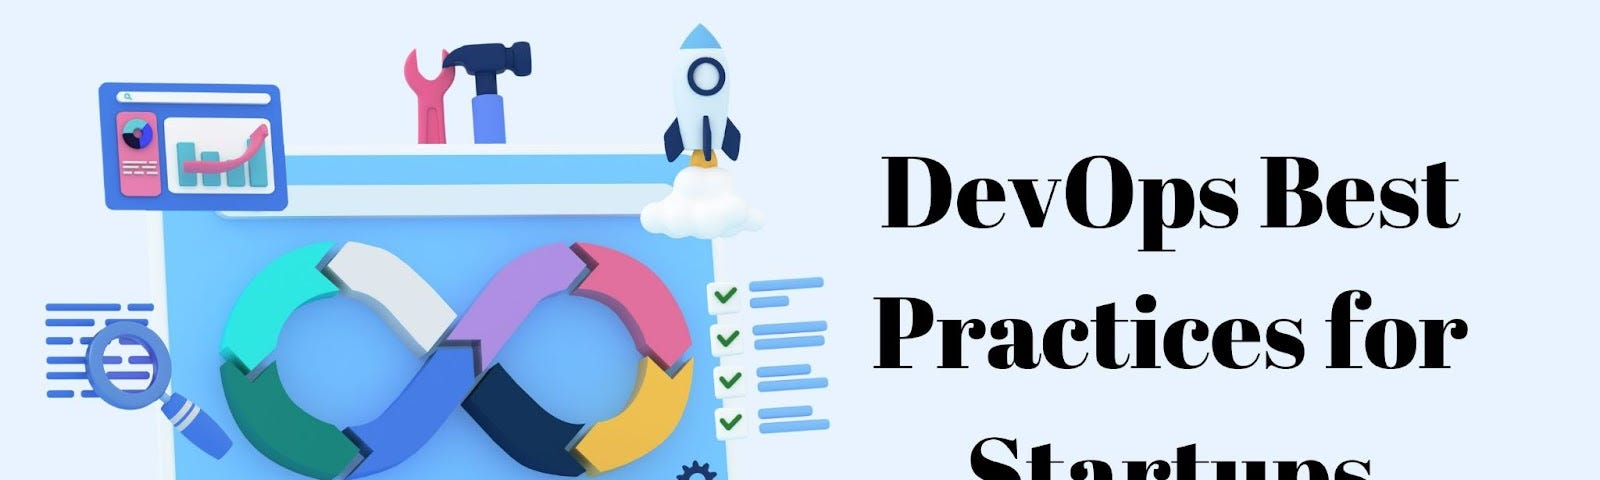 DevOps Best Practices for Startups